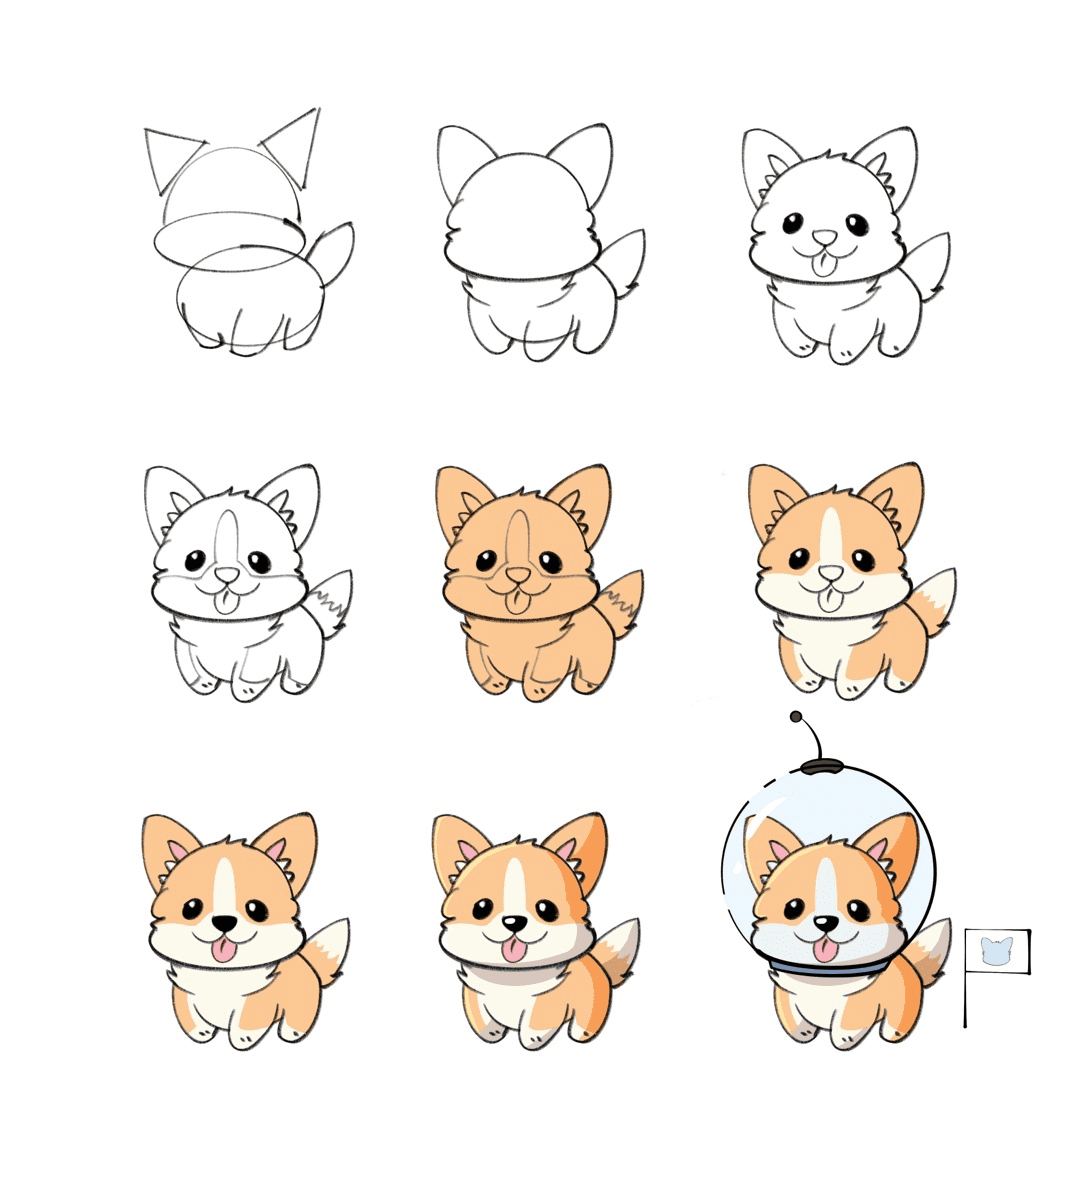 Cute dog kawaii chibi drawing style Royalty Free Vector-saigonsouth.com.vn